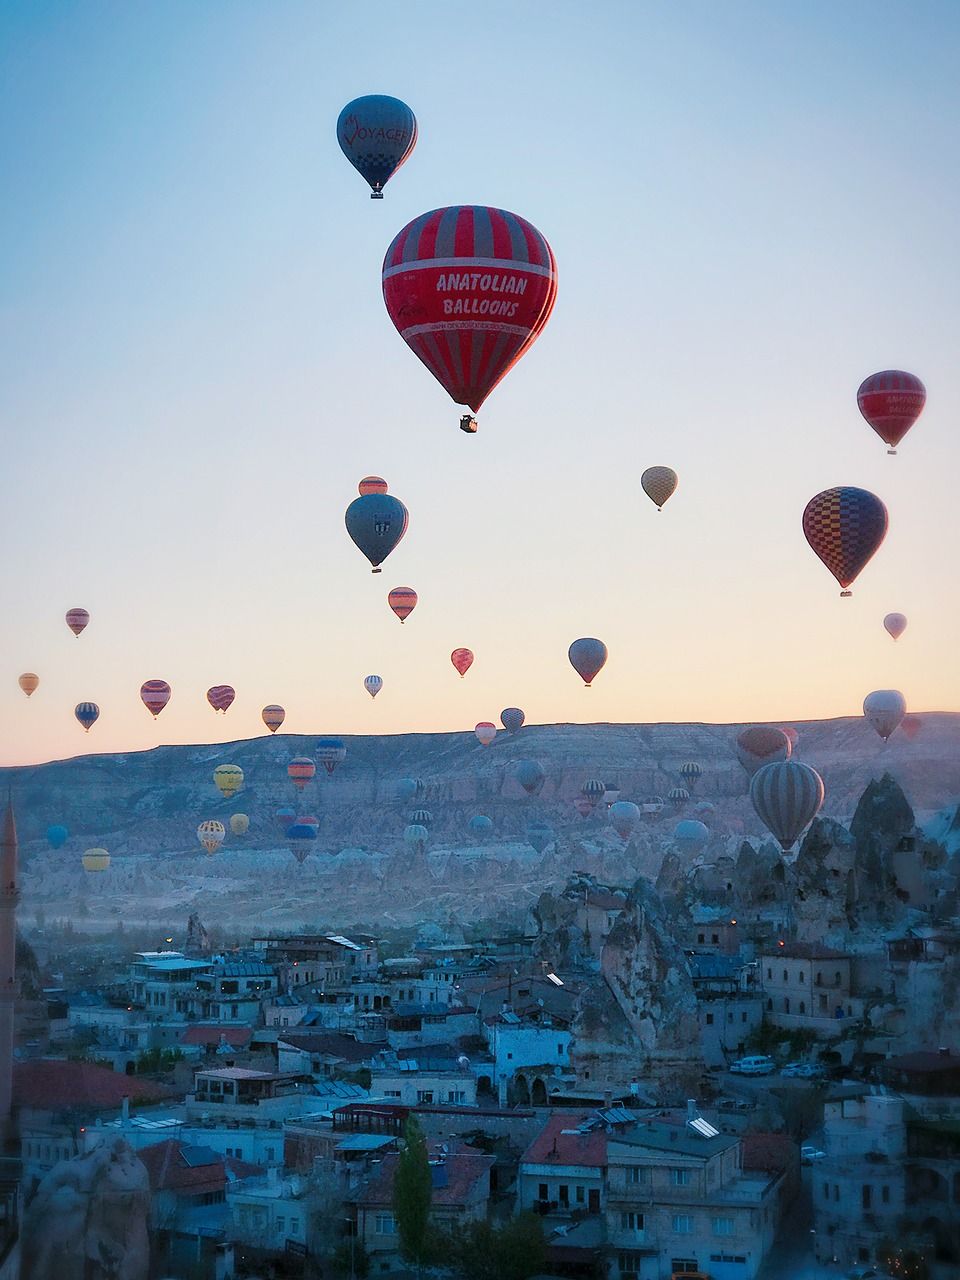 Cappadocia Turkey/ https://pixabay.com/photos/early-morning-cappadocia-2703077/